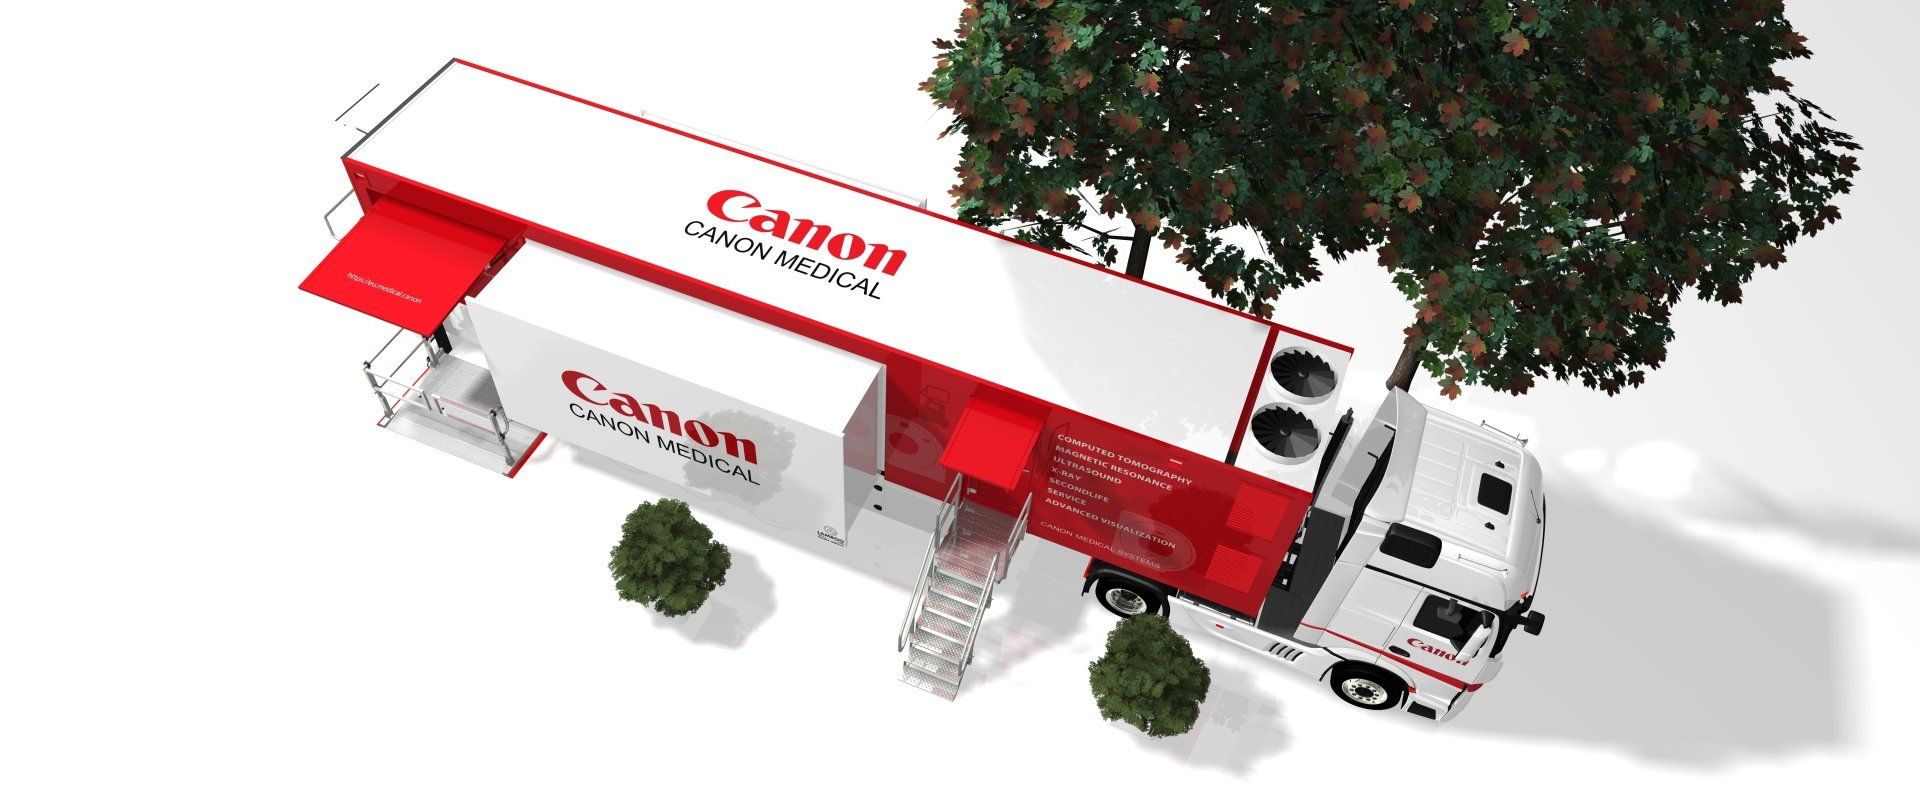 CANON Mobile CT design